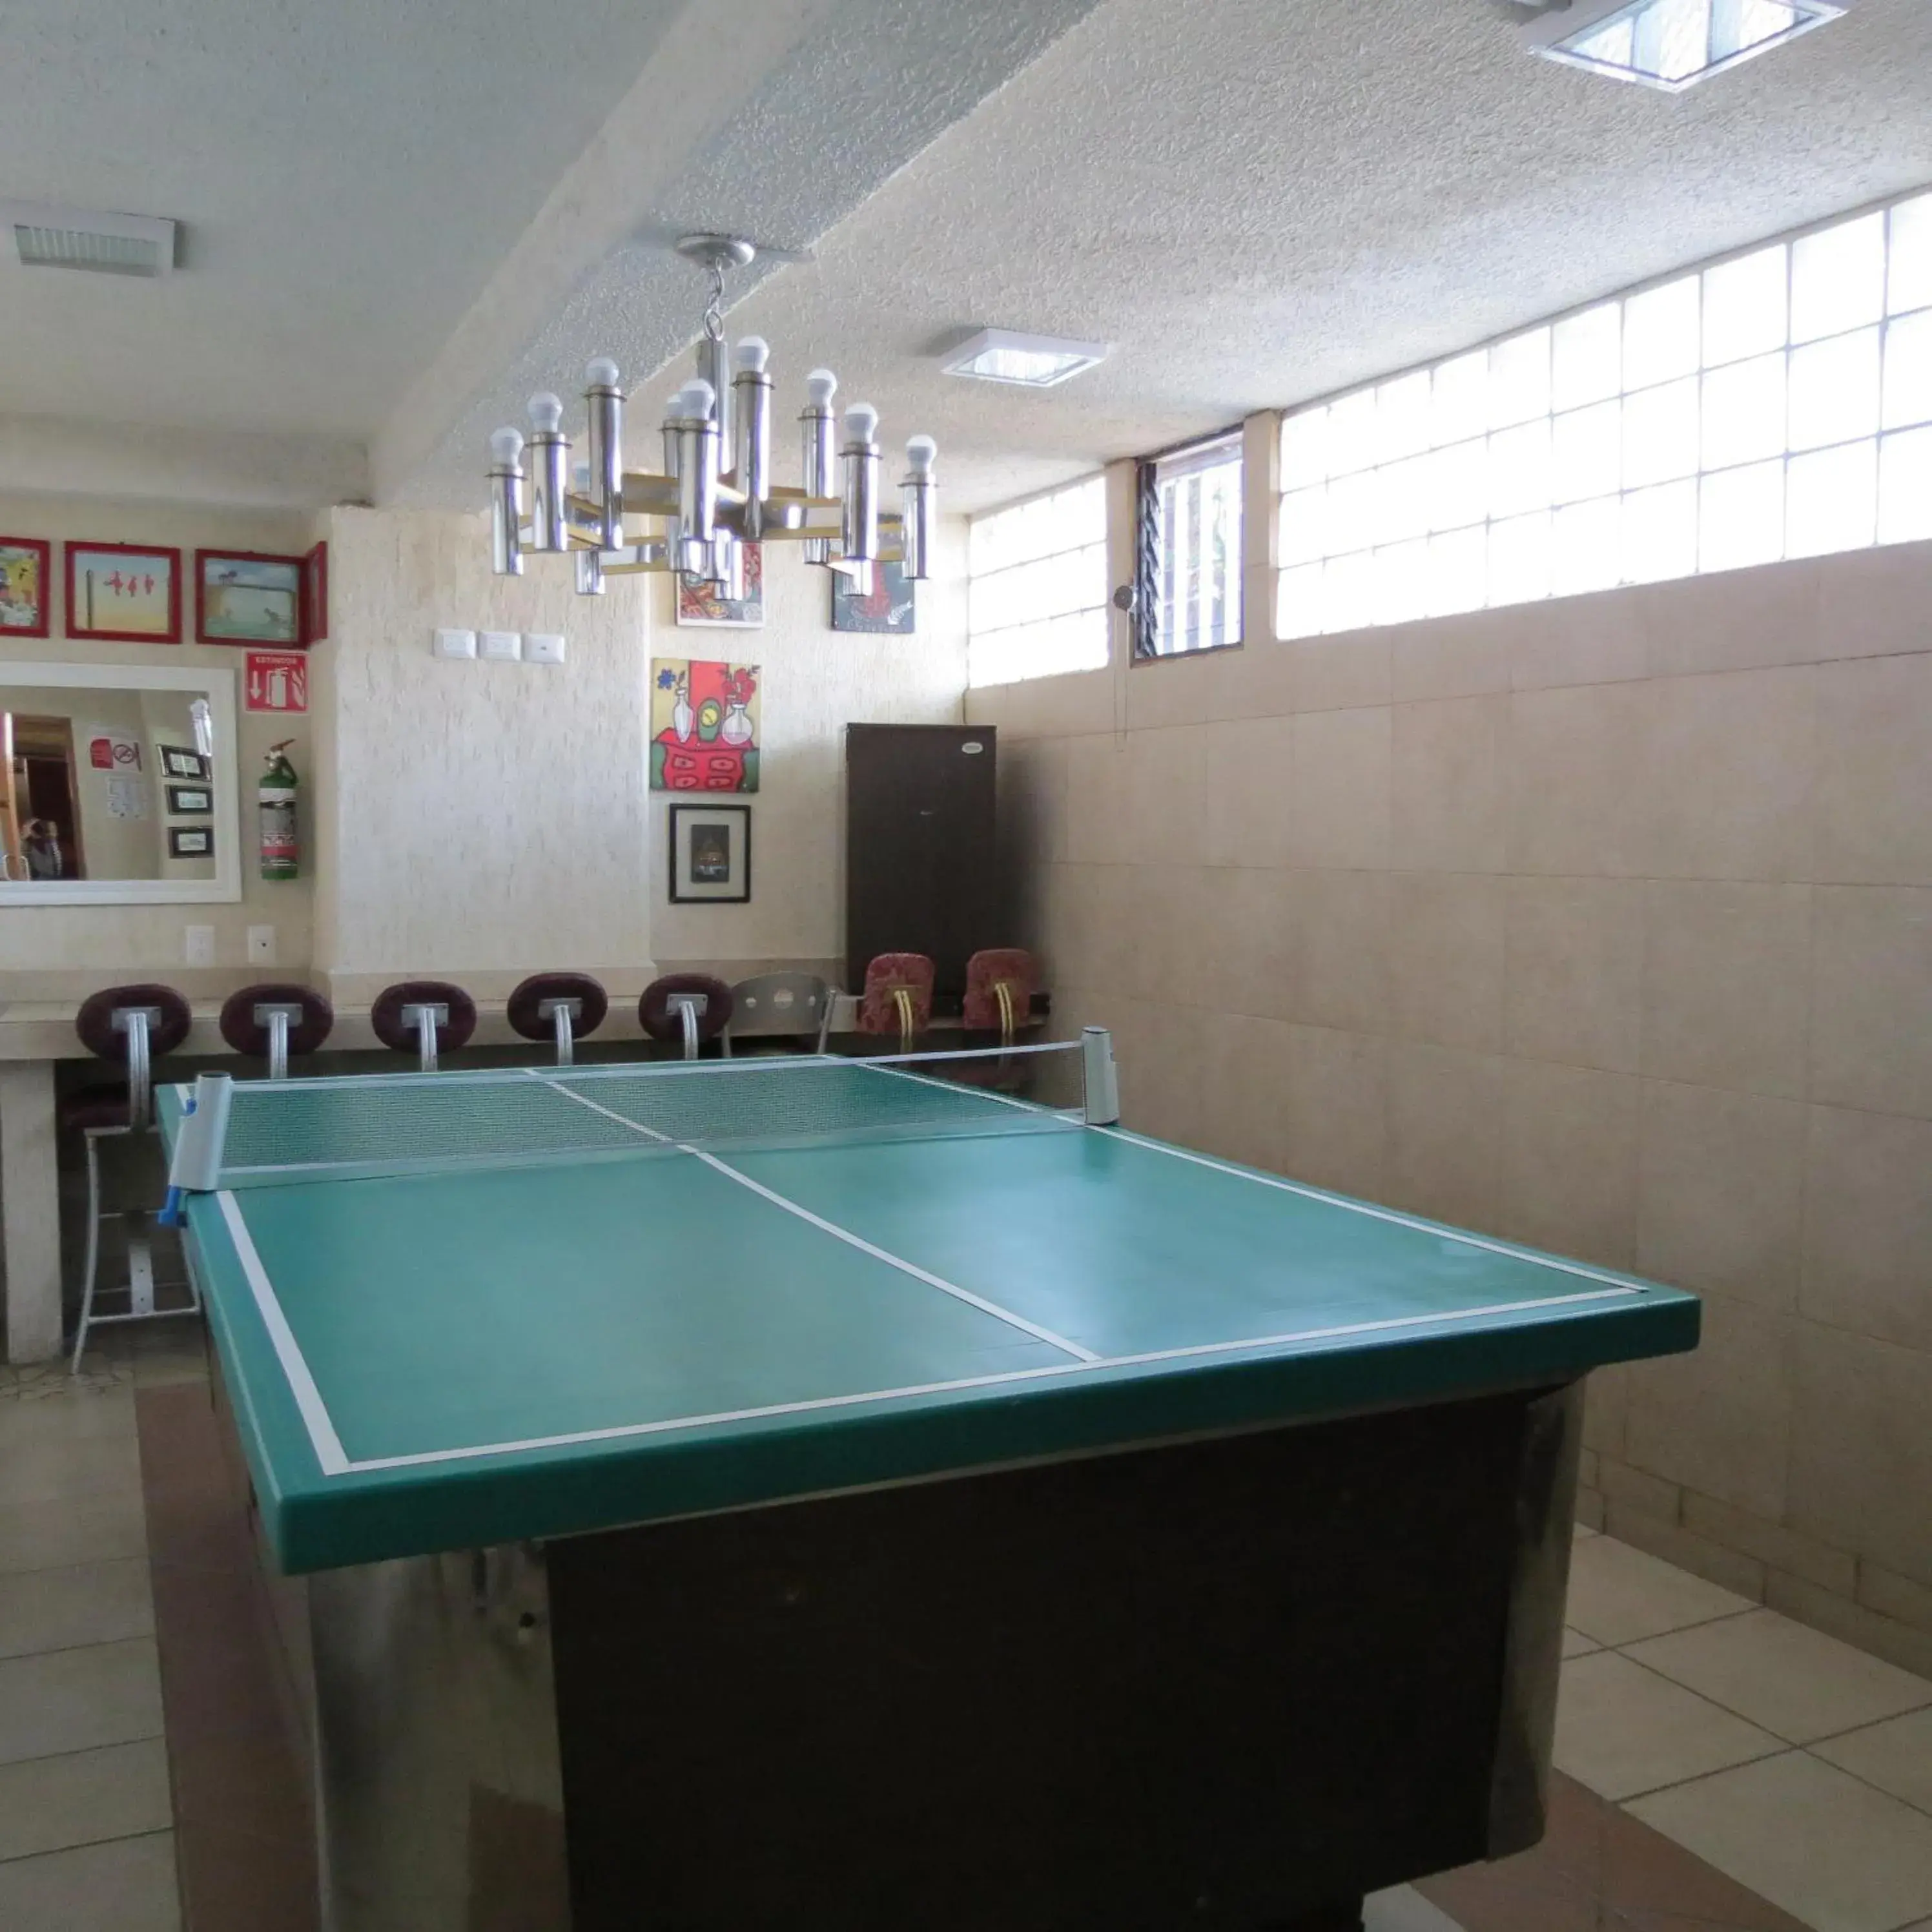 Game Room, Table Tennis in Azul Turquesa